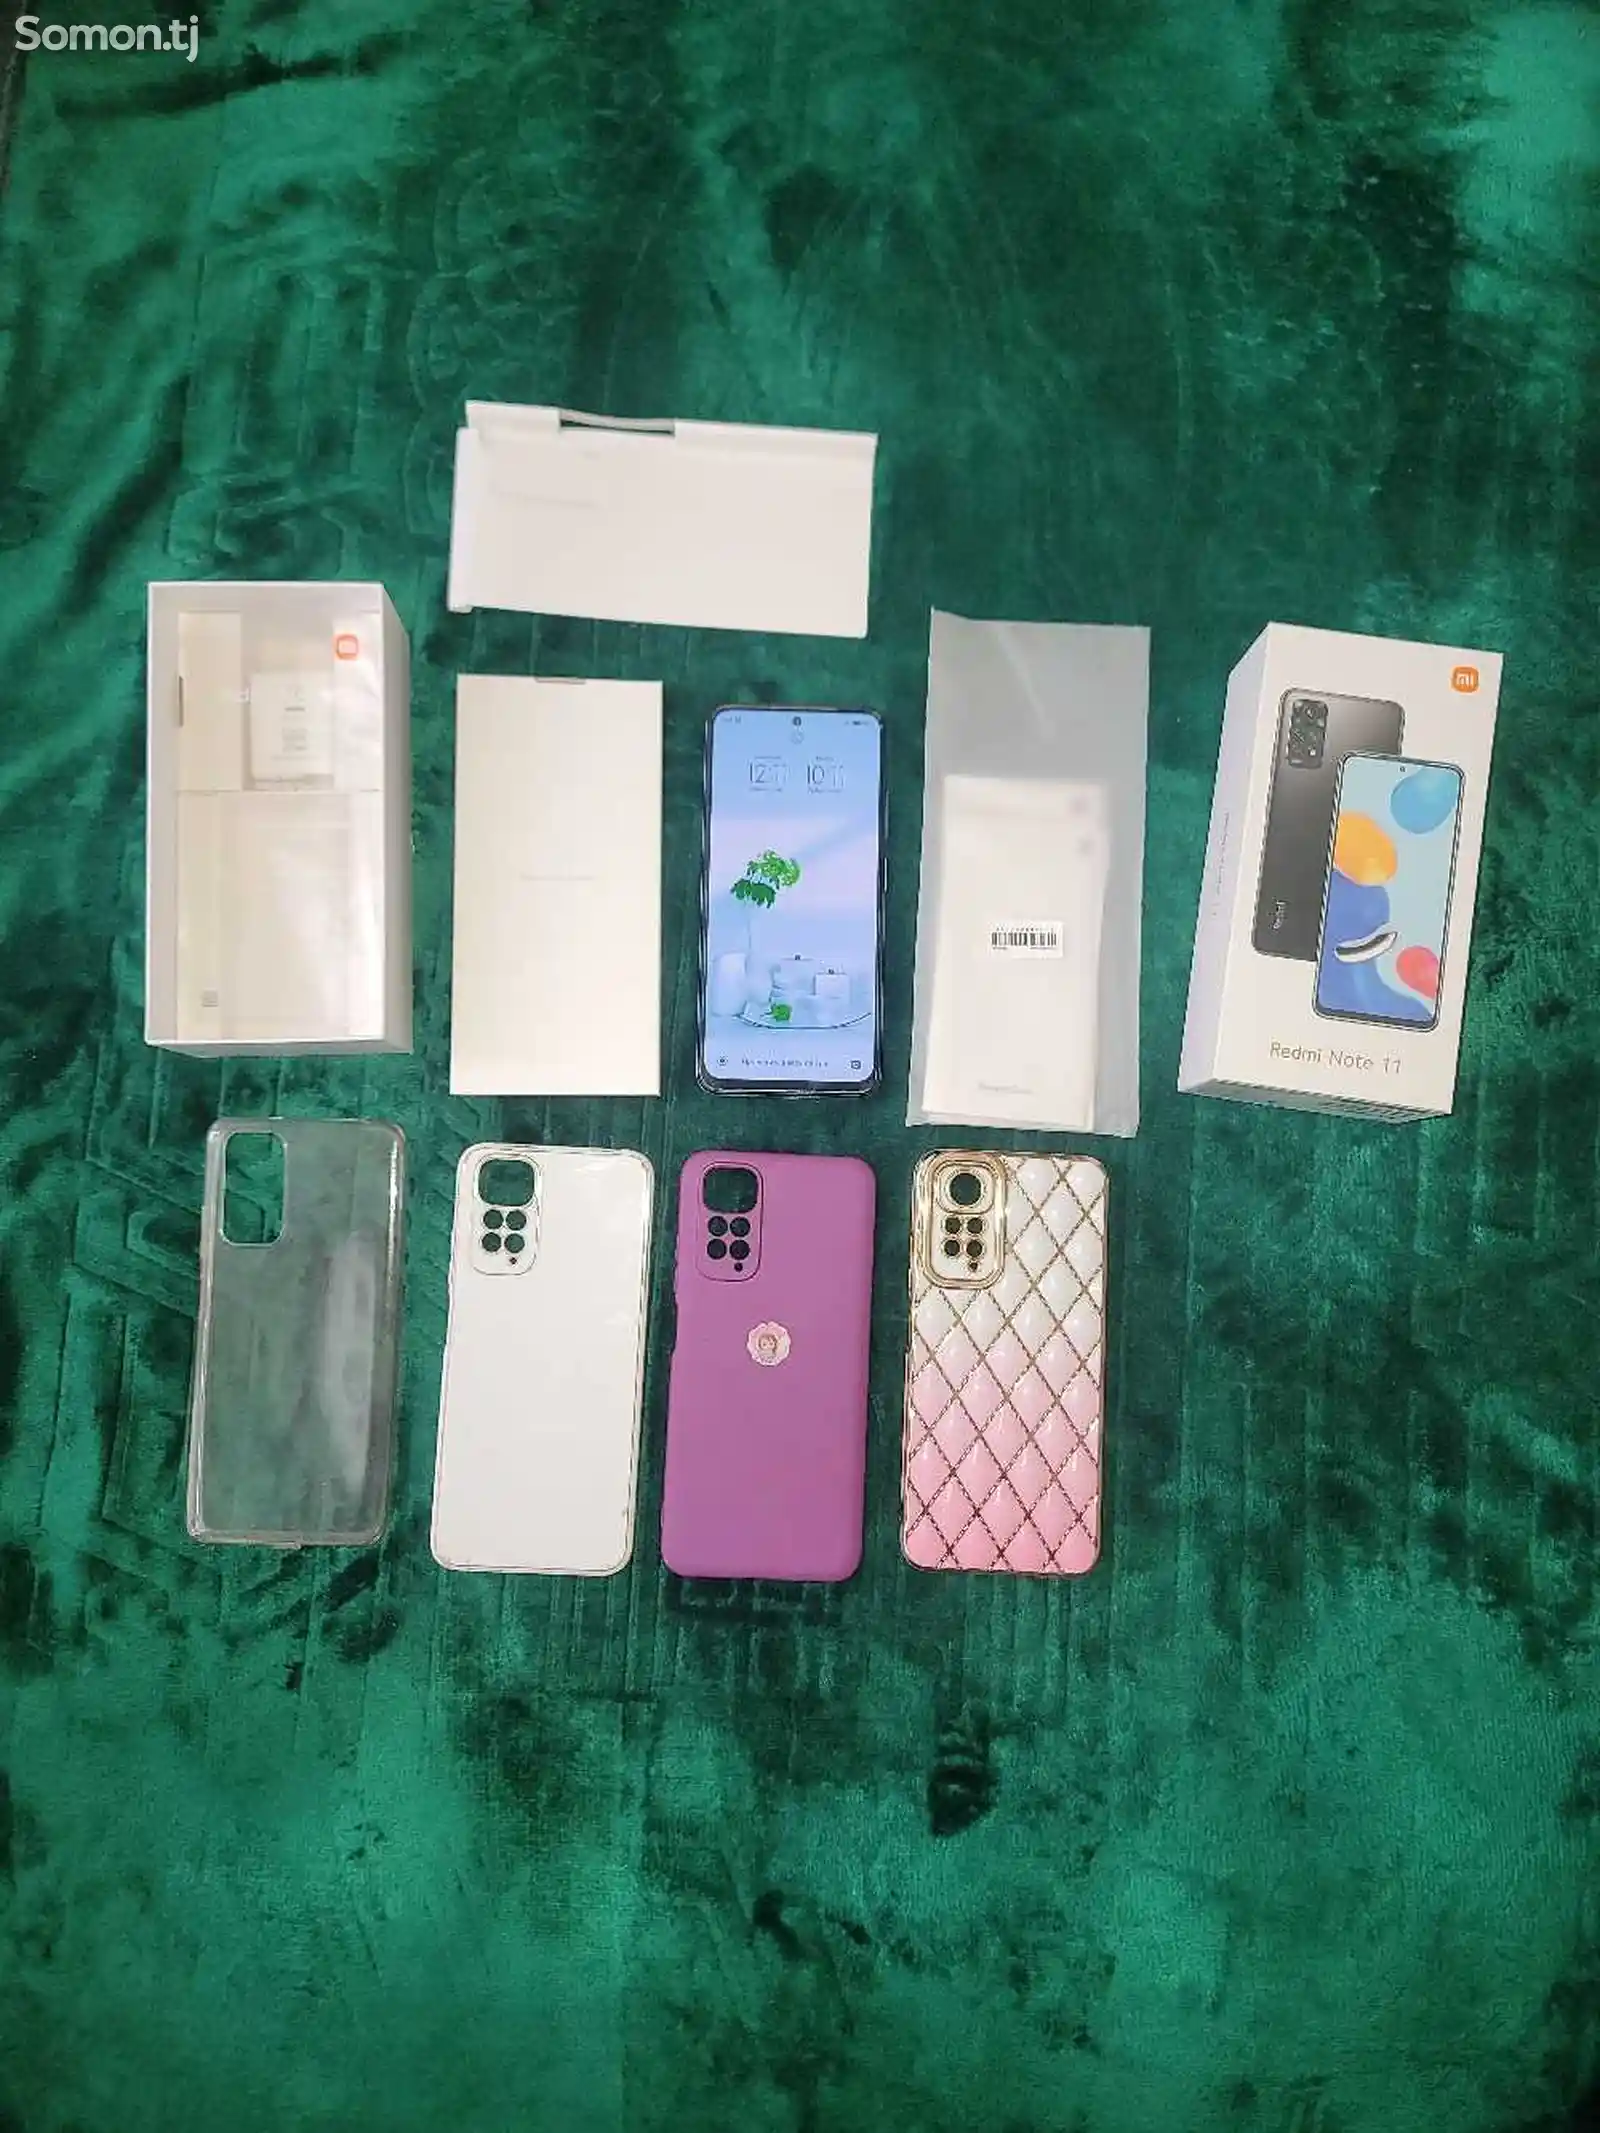 Xiaomi Redmi Note 11-2